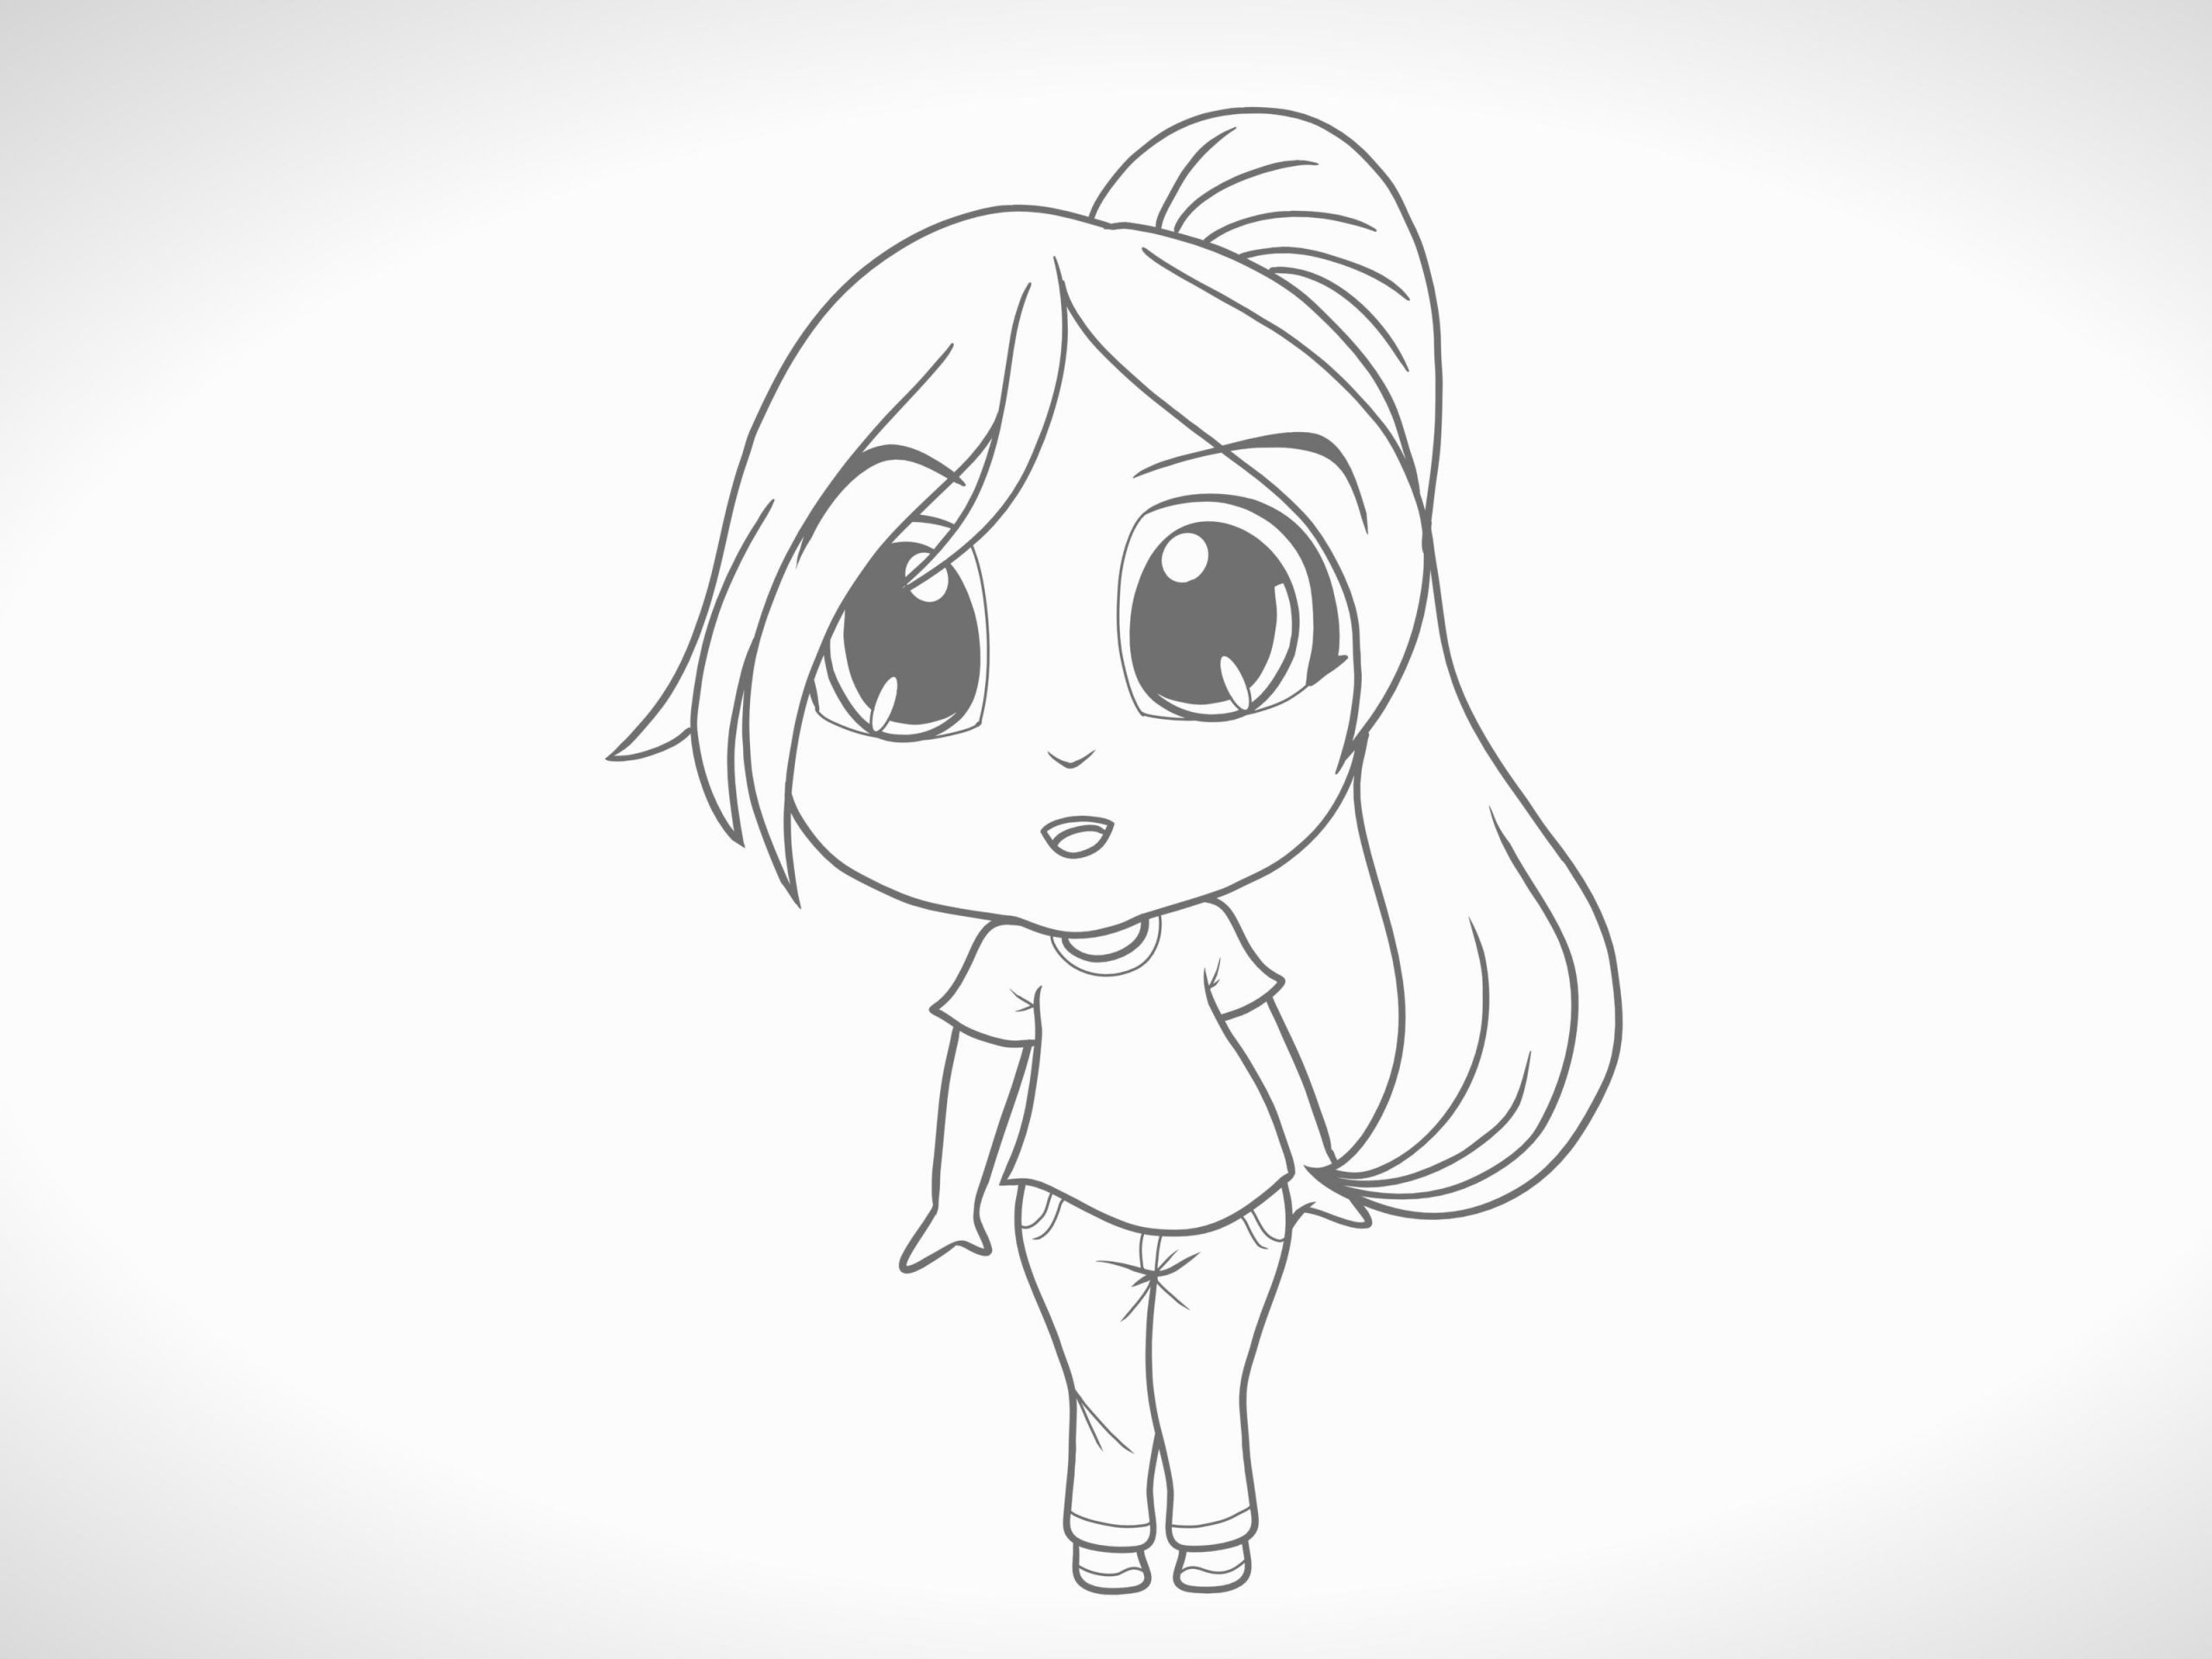 How to Draw Simple Anime Eine Chibi Figur Zeichnen 12 Schritte Mit Bildern Wikihow